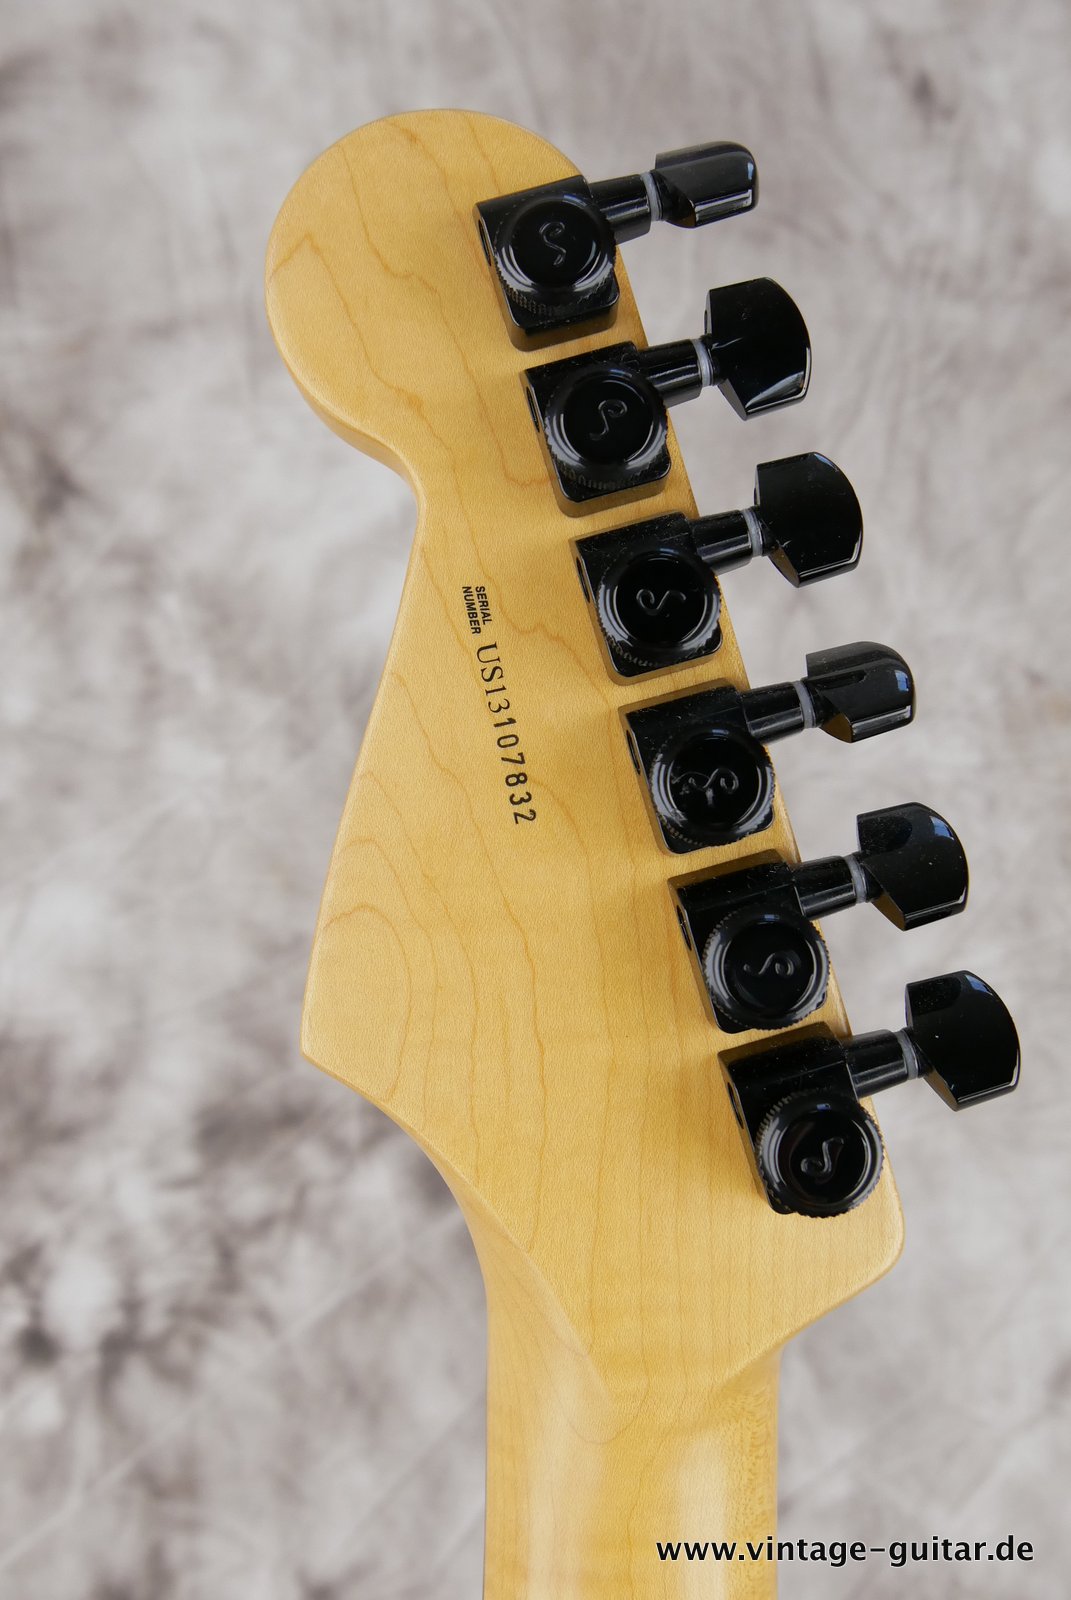 Fender-Stratocaster-2014-US-Standard-black-hardware-010.JPG